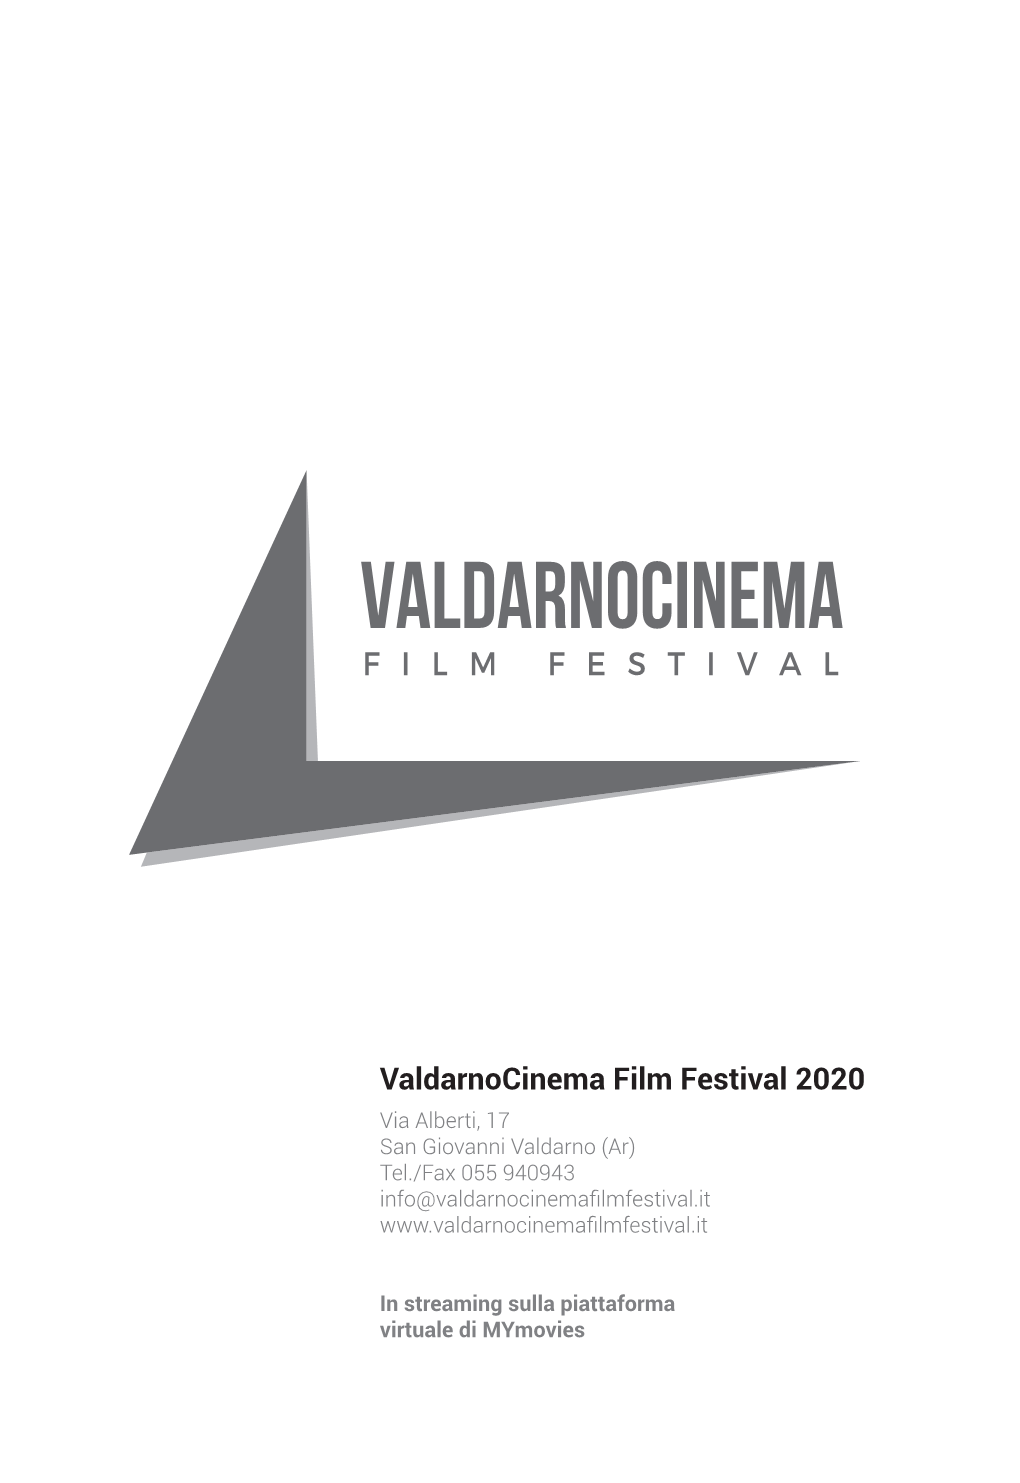 Valdarnocinema Film Festival 2020